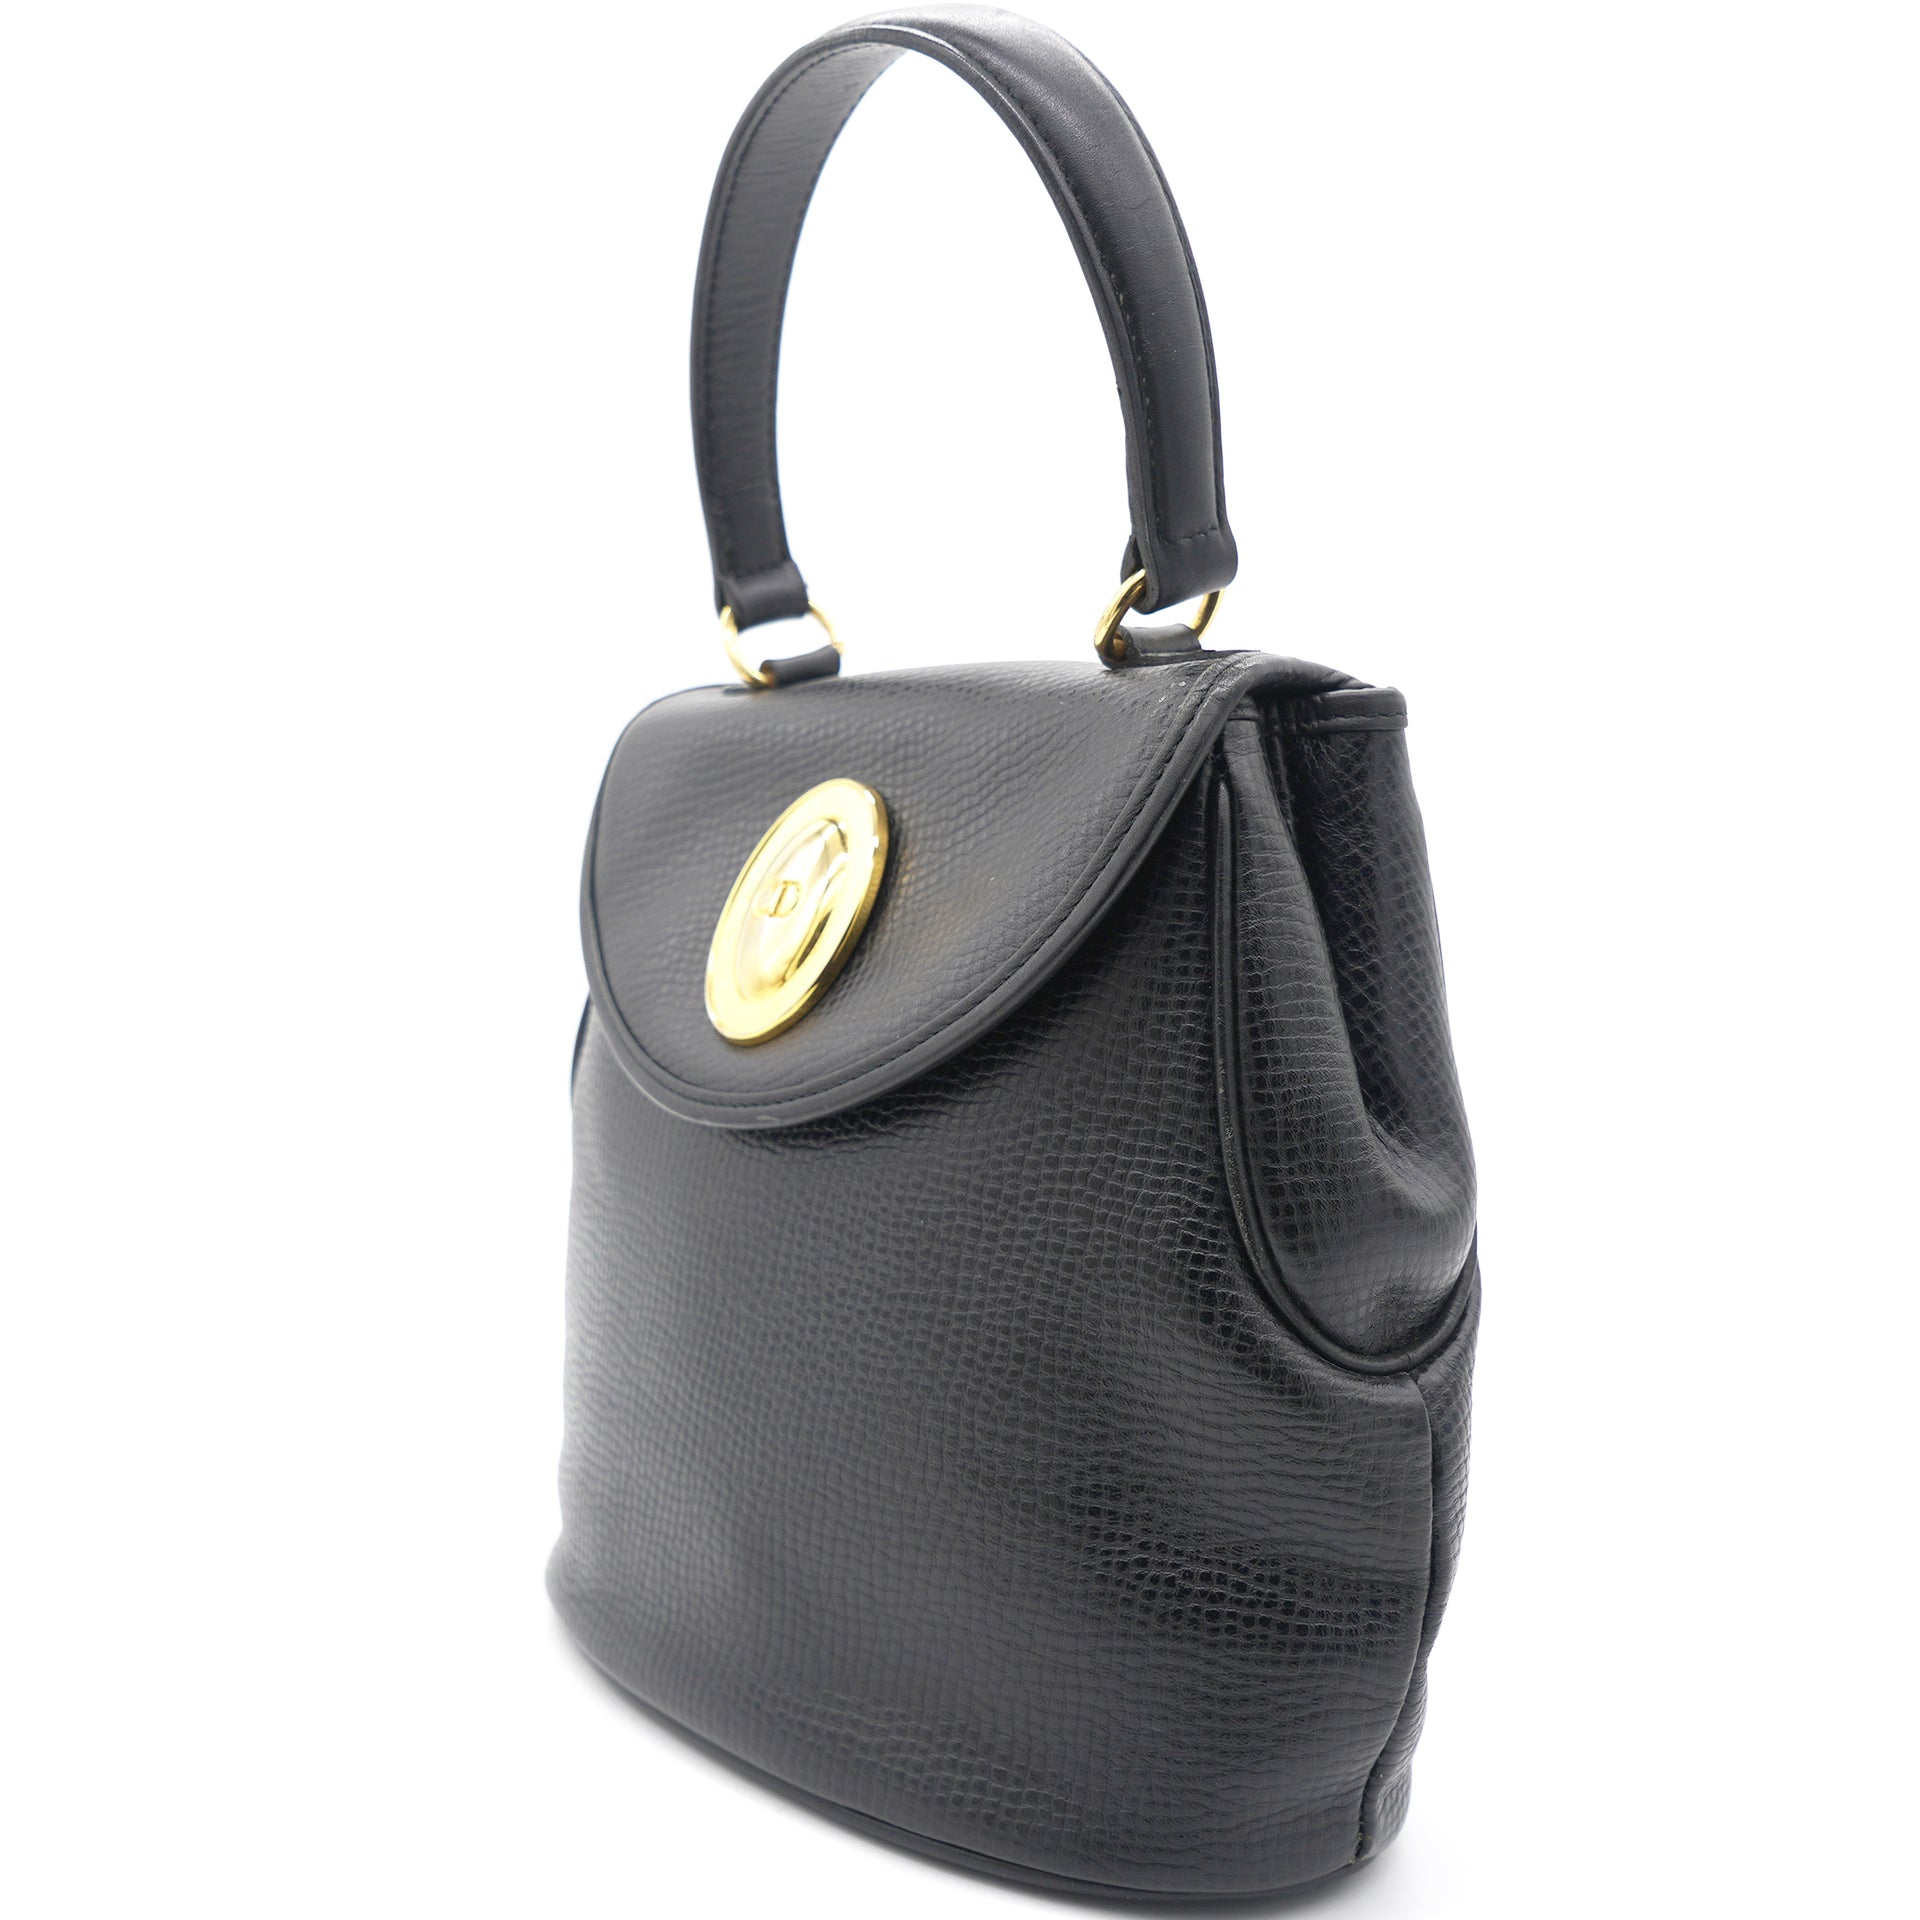 Vintage Christian Dior 2way Bag Tote Bag Shoulder Bag Black Color Leather